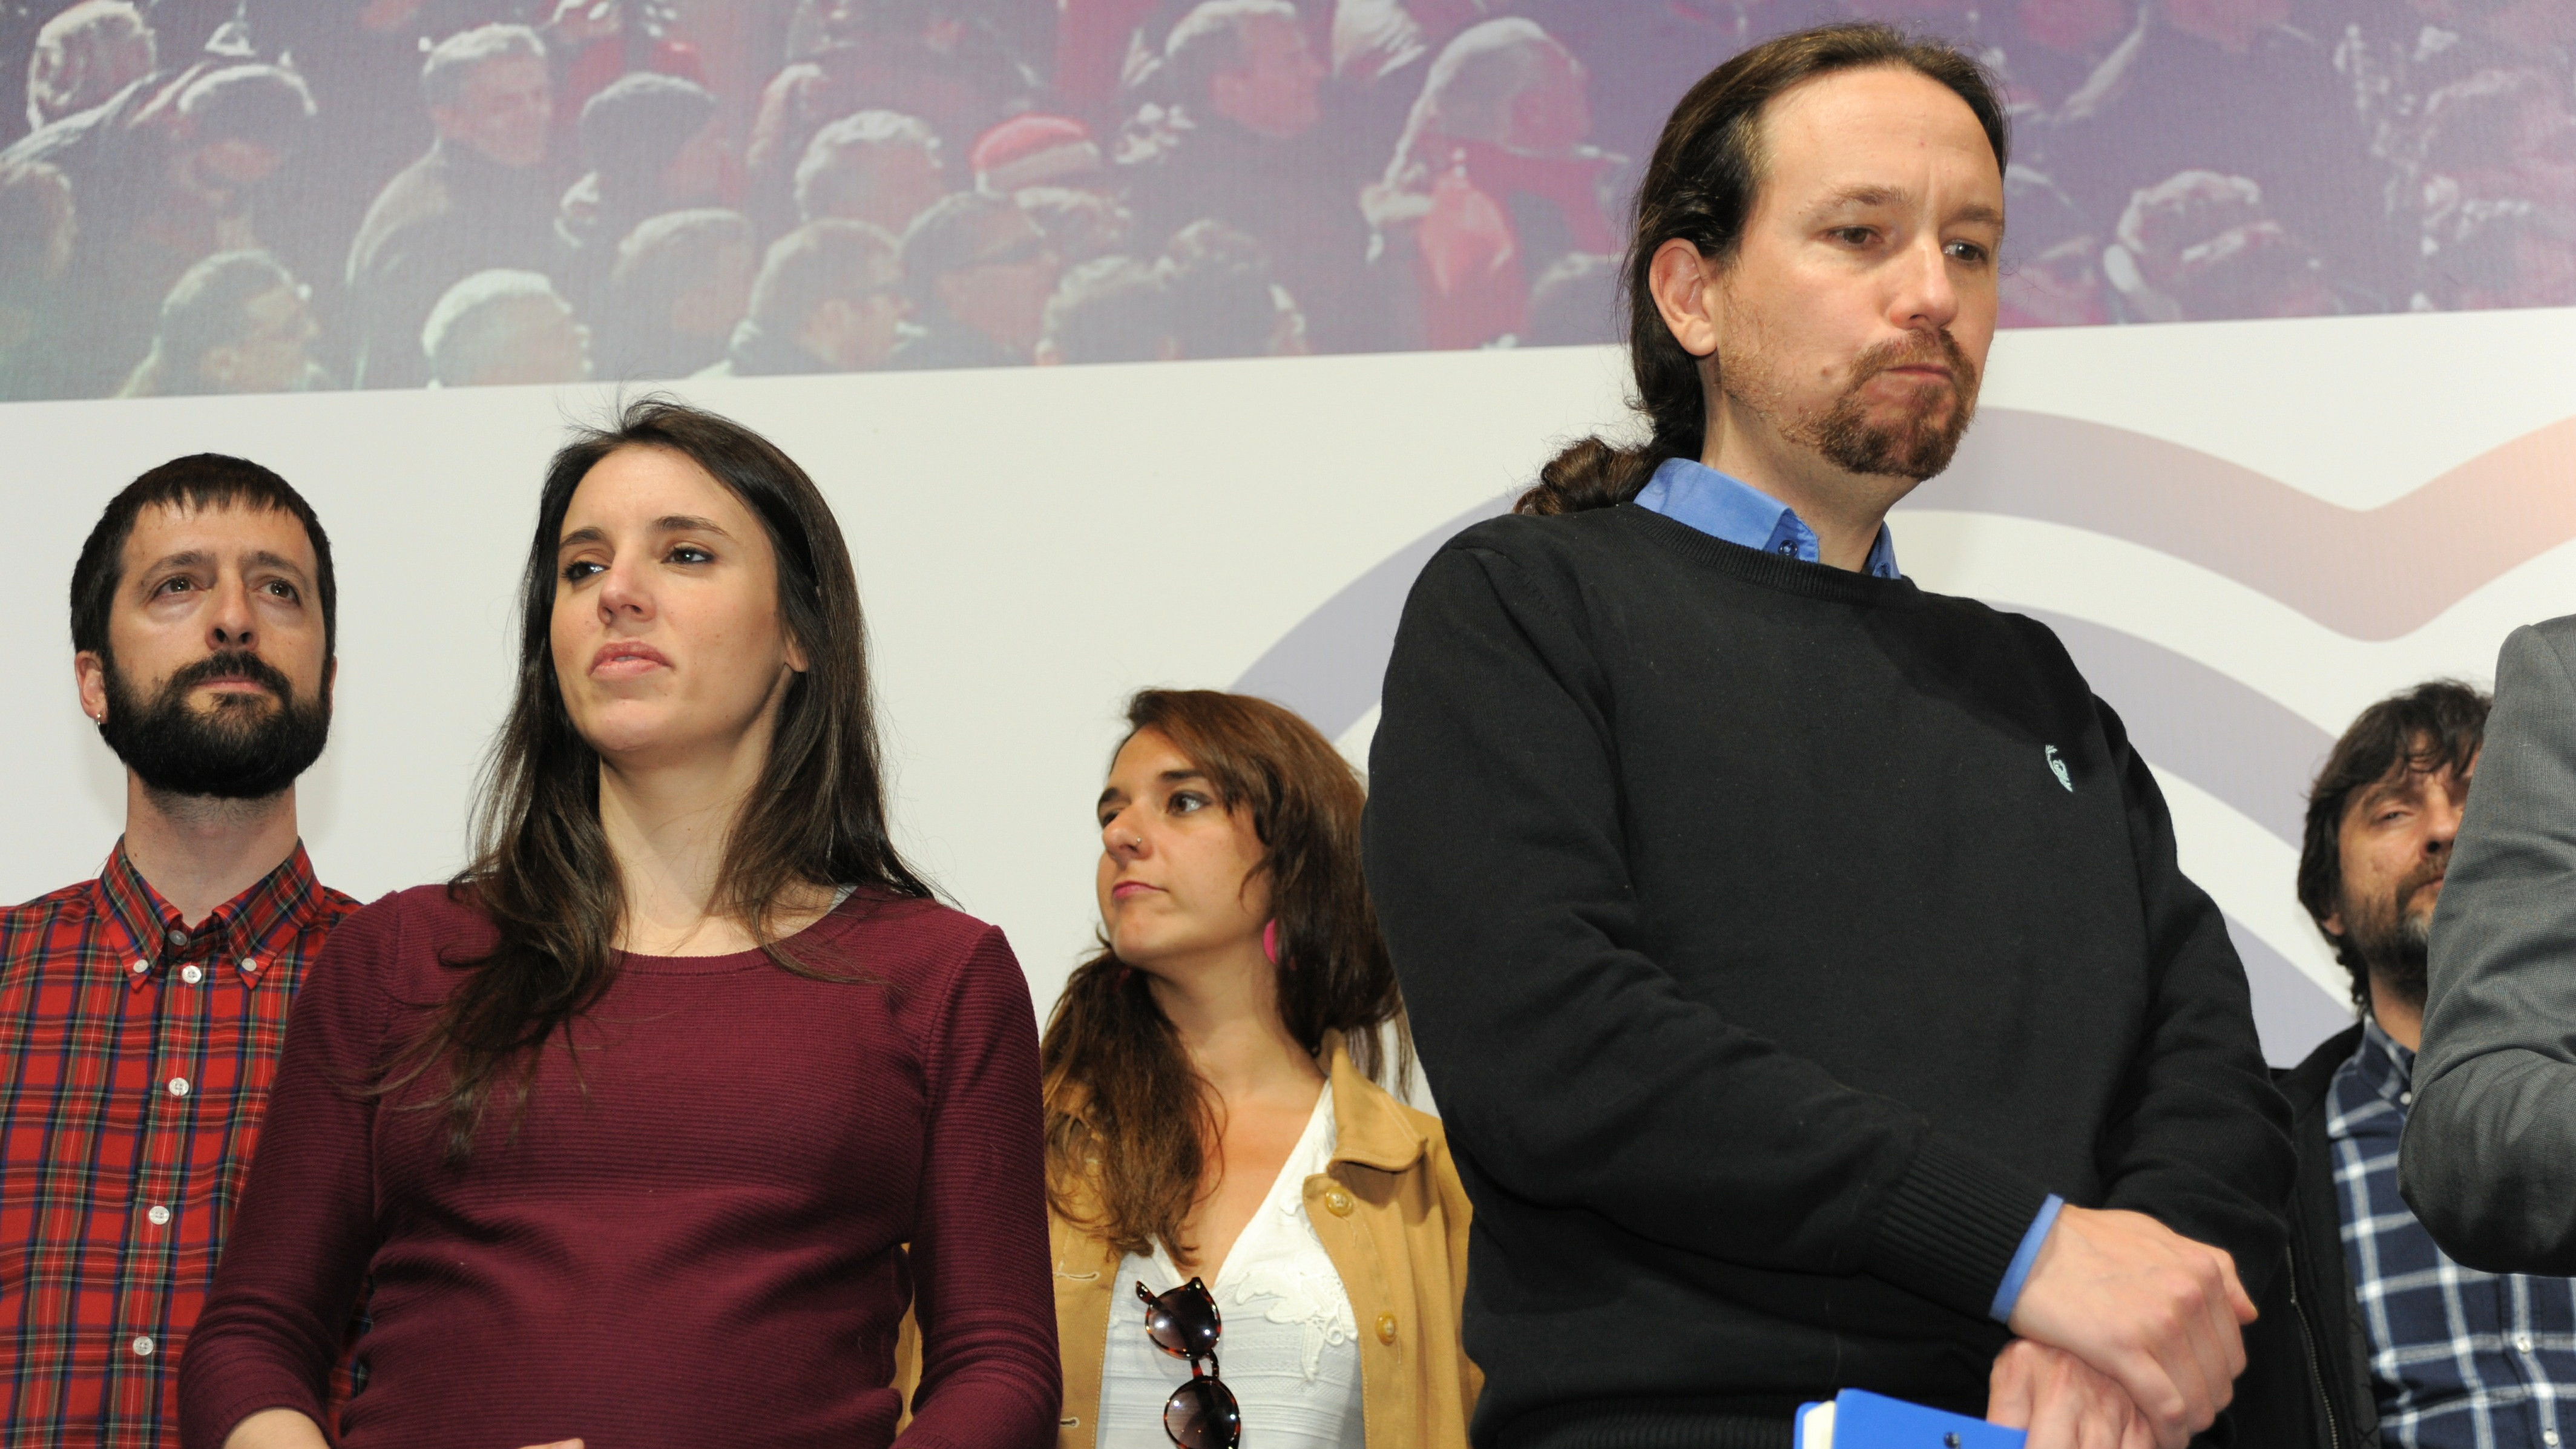 De la niñera a la factura de Monedero, la Justicia cerca a Podemos con 8 causas por corrupción